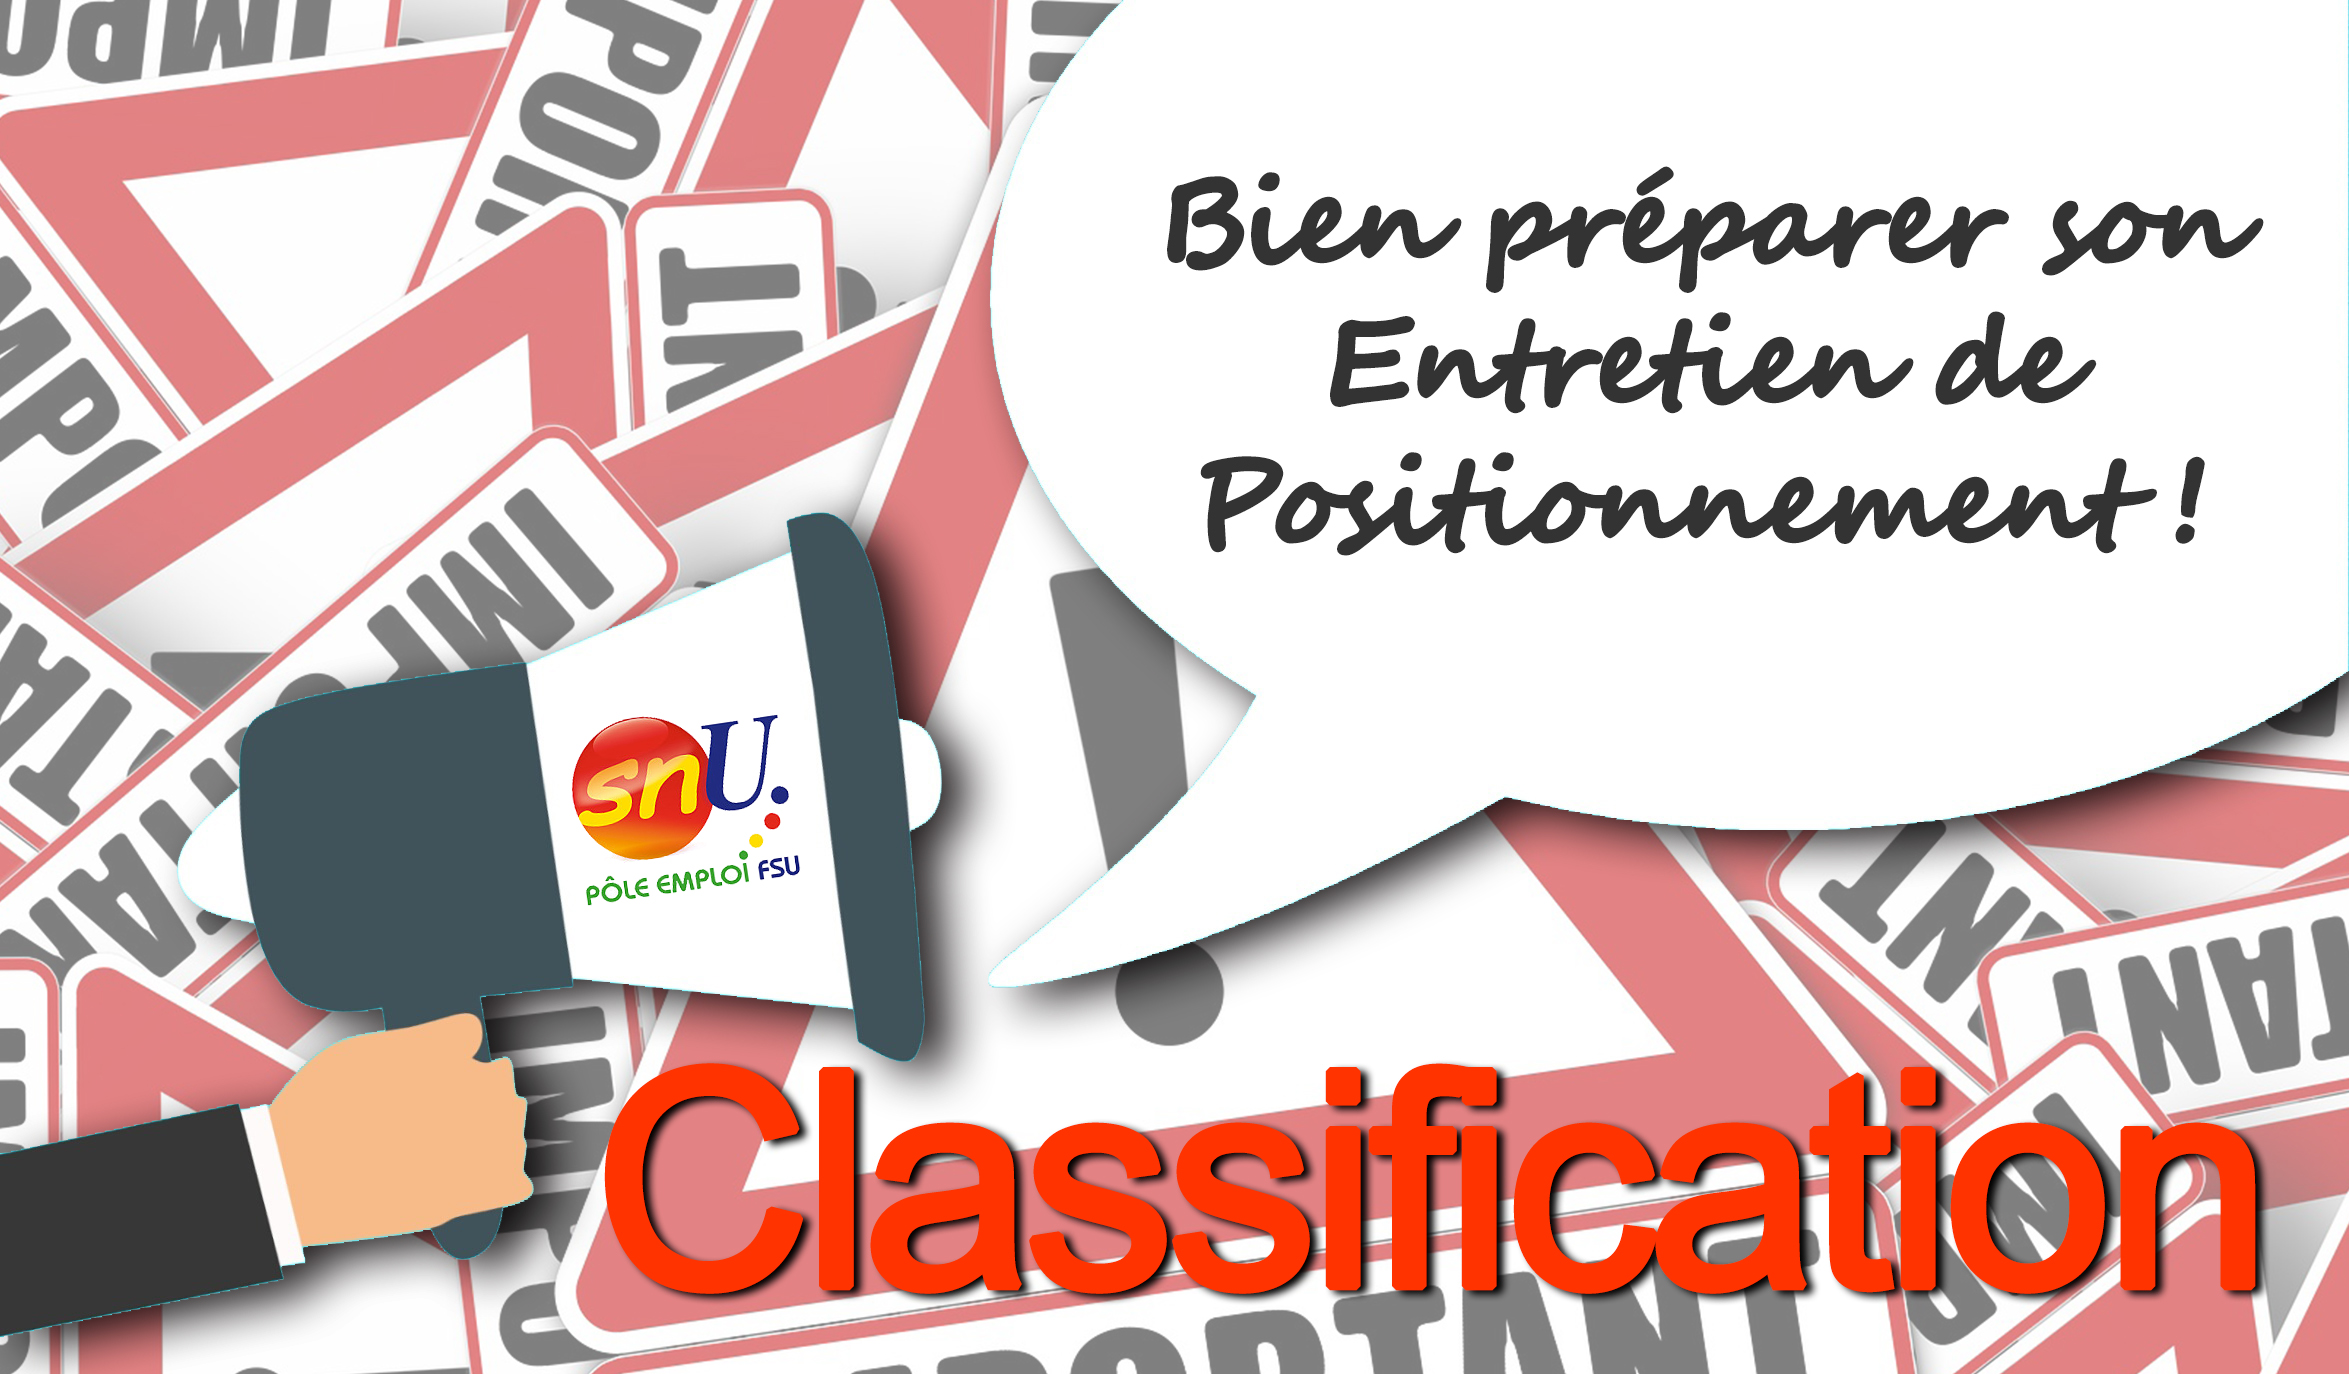 Classification : Positionnement et recours